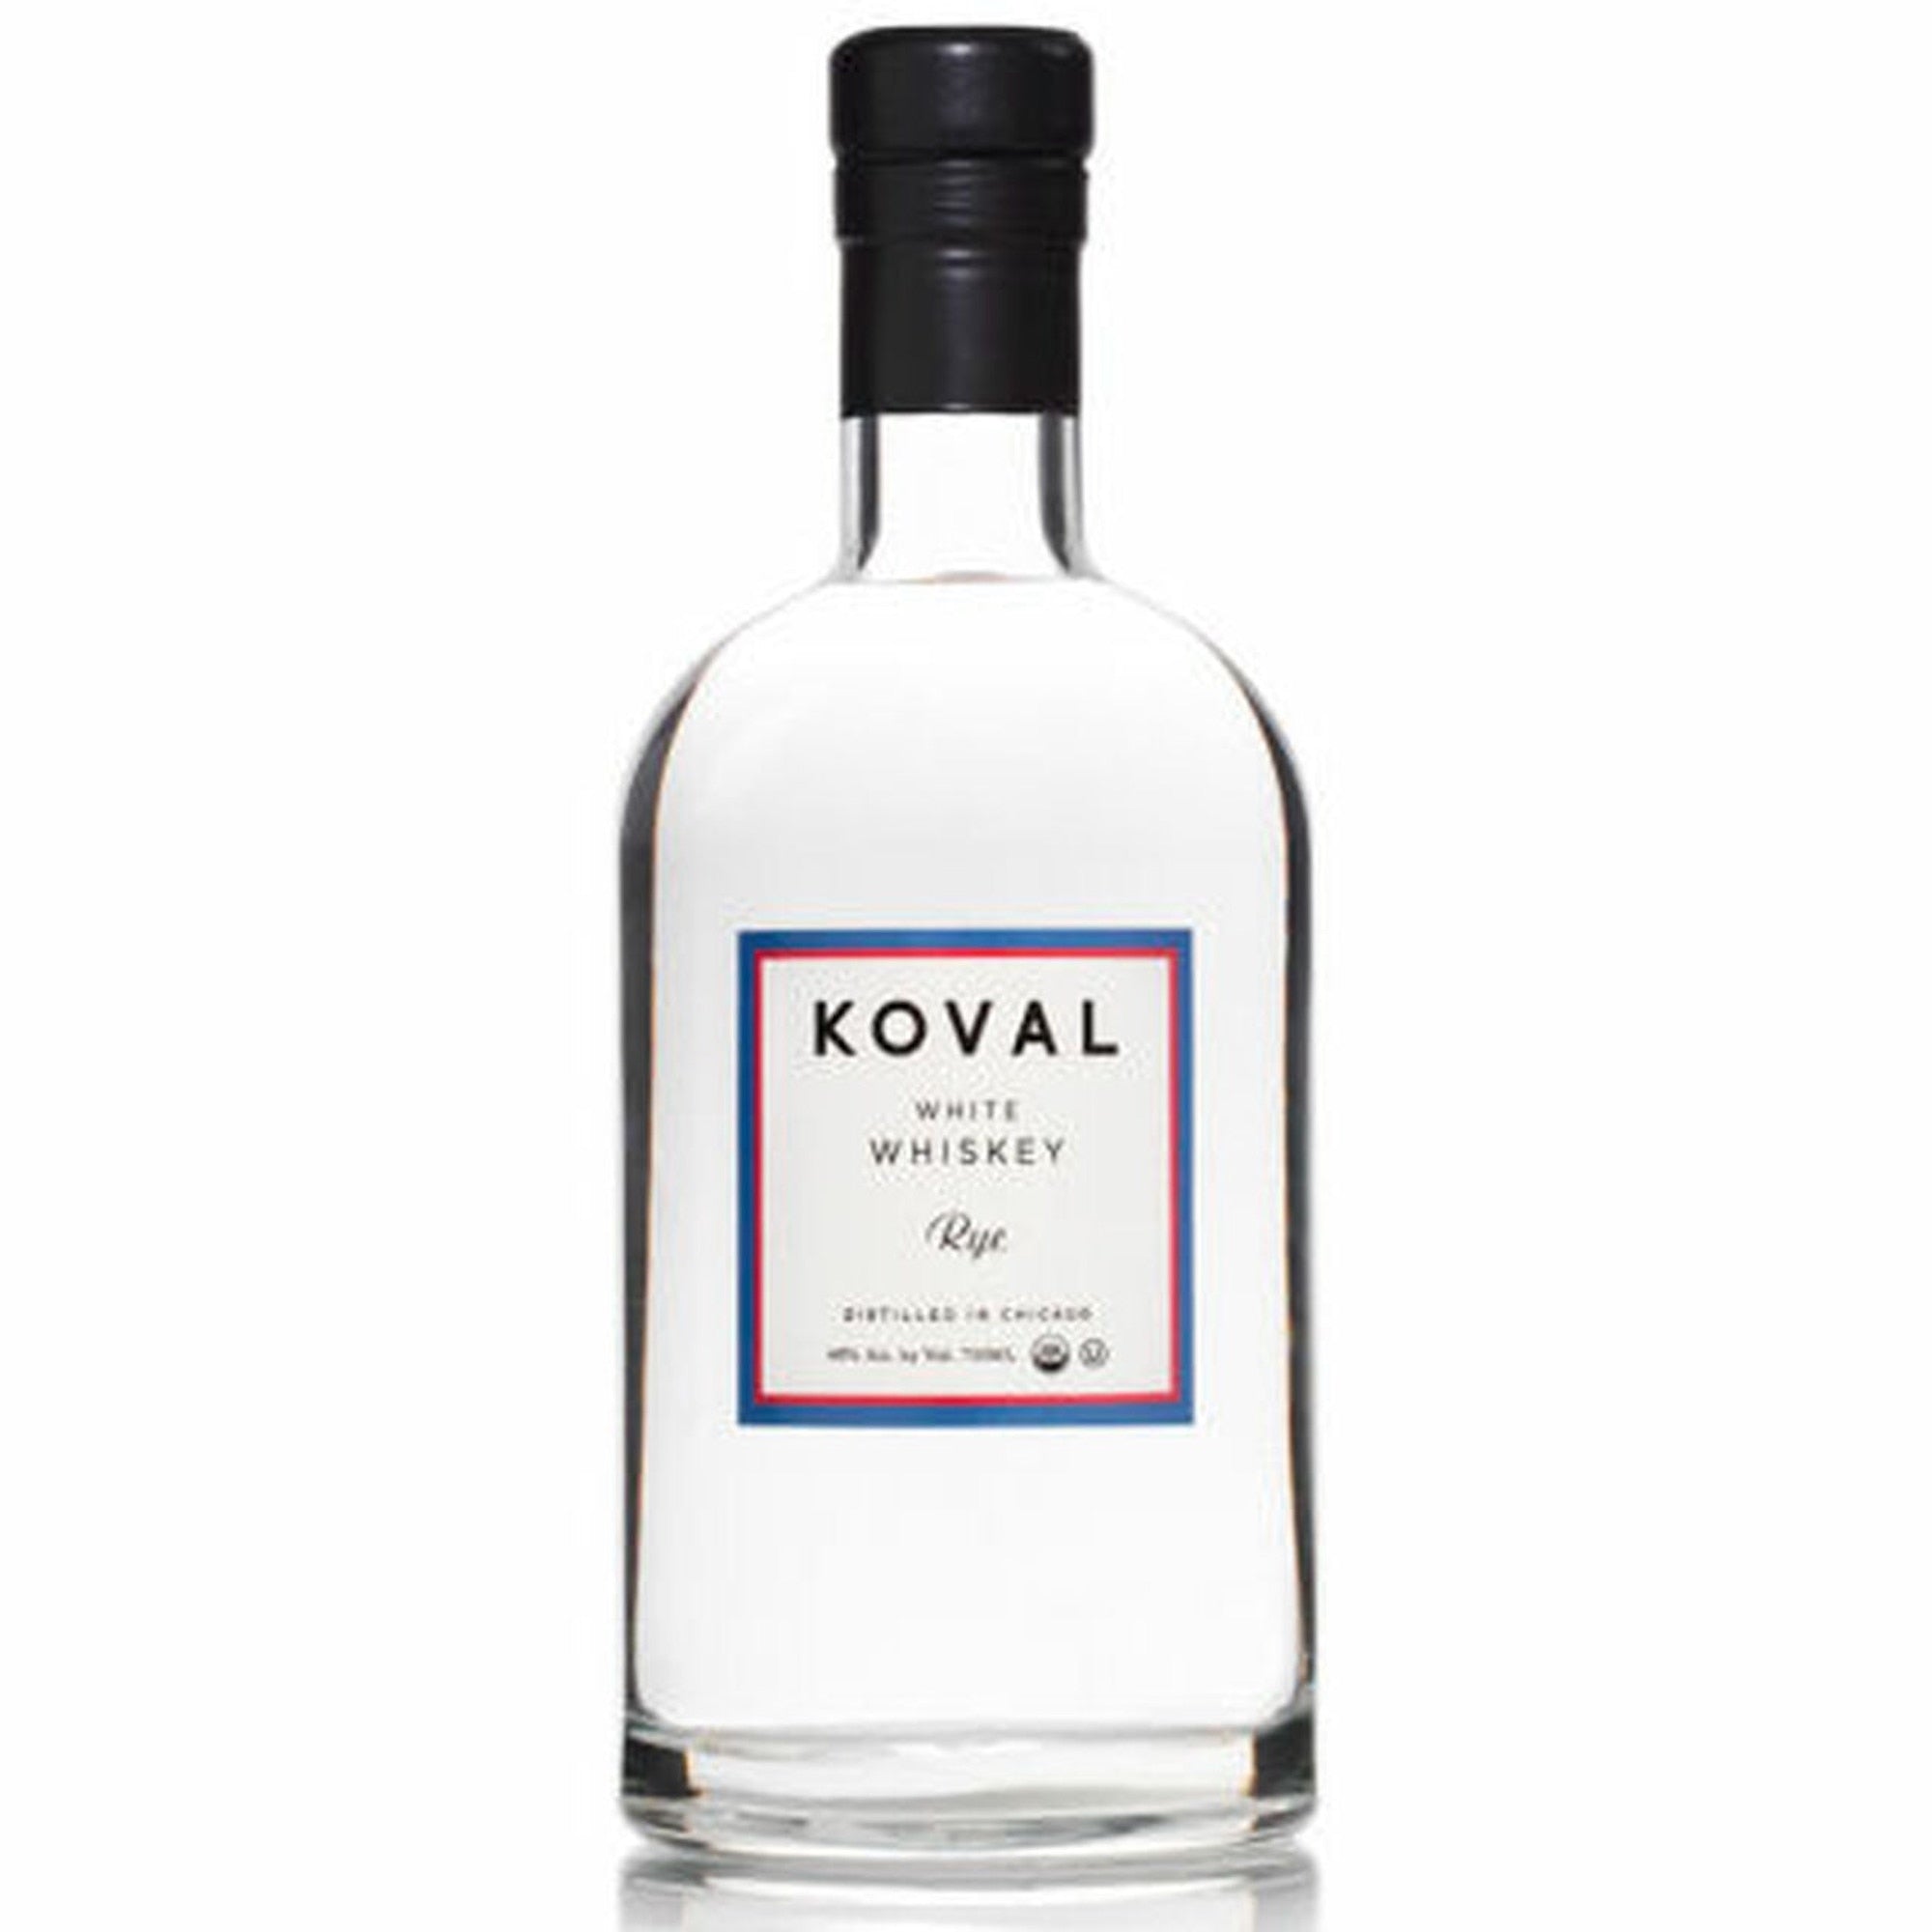 Koval Rye White Whiskey